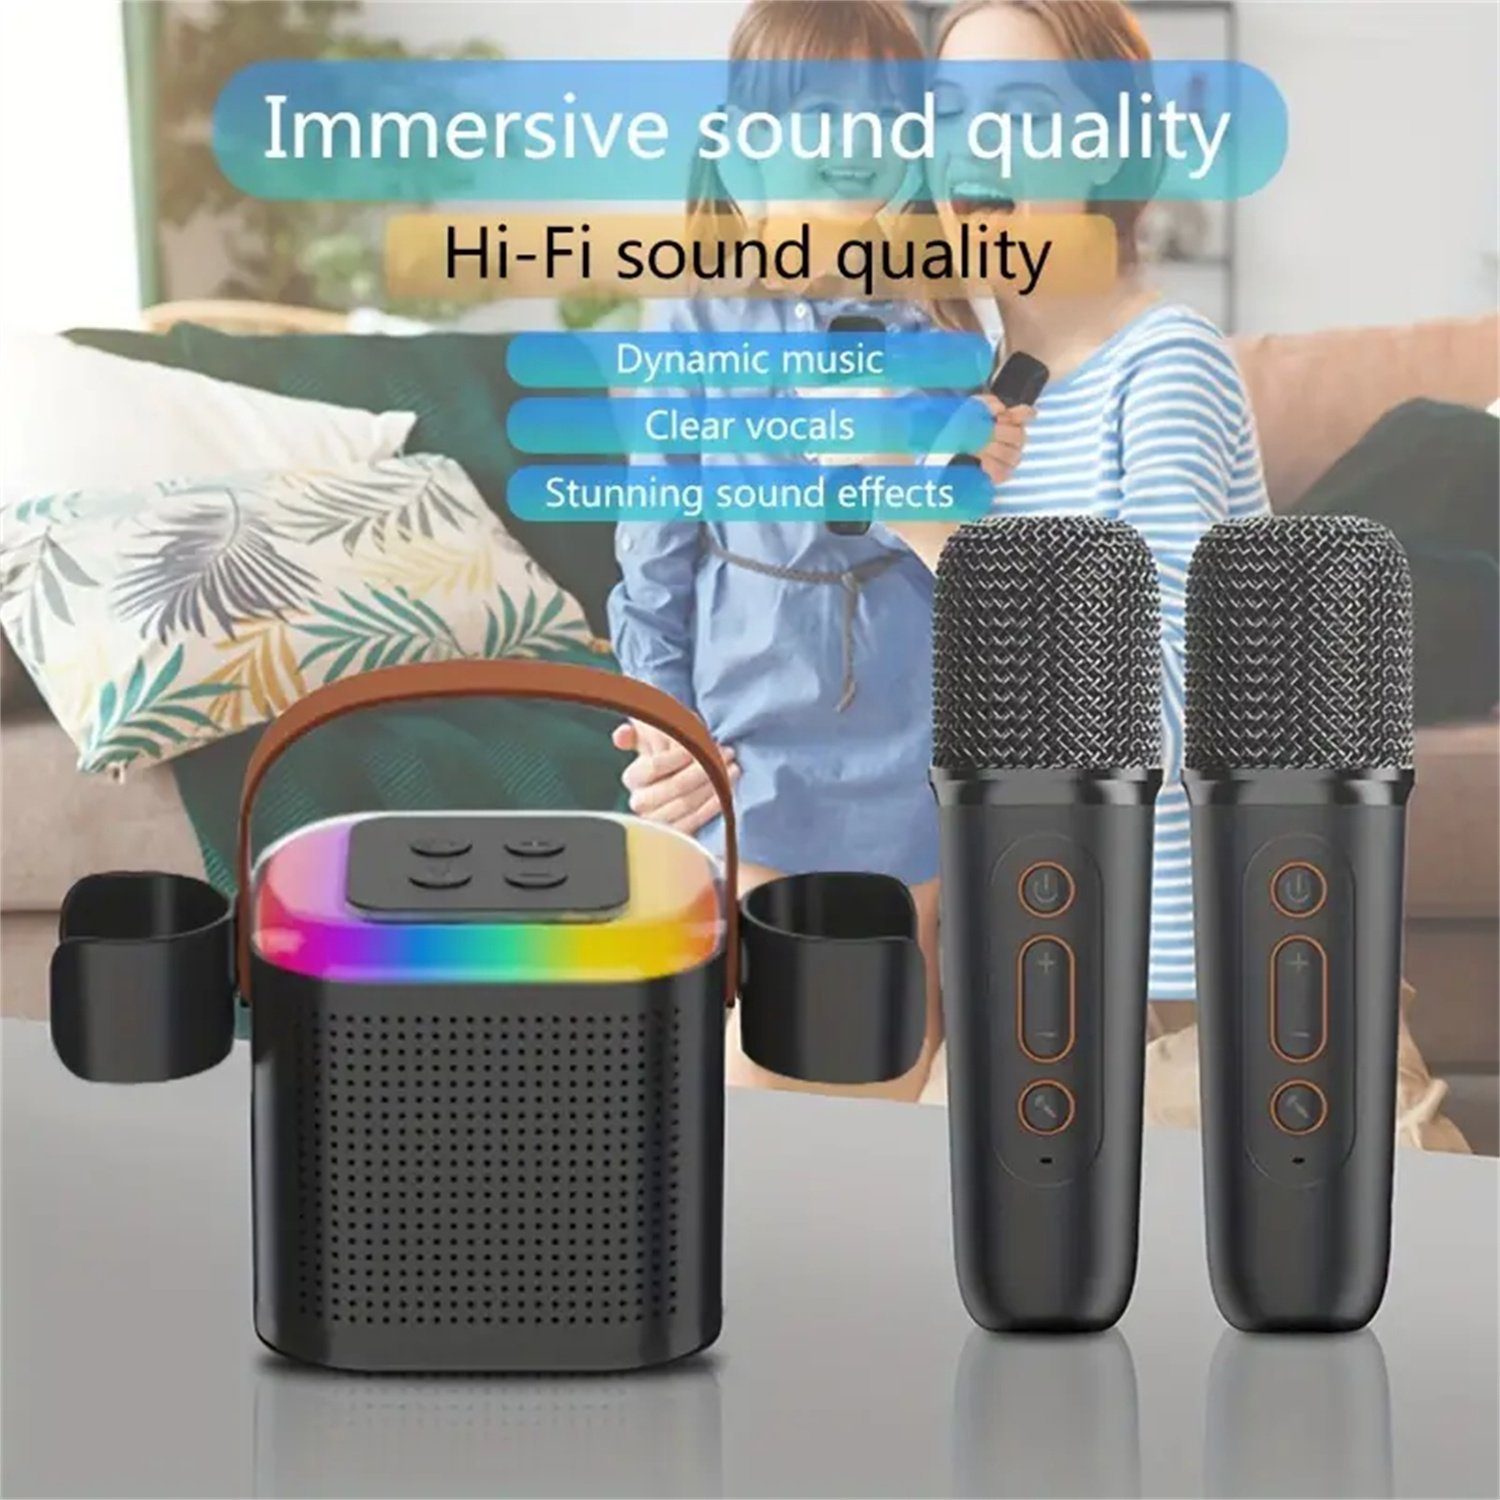 Lautsprecher verschiedenen mit vier Bluetooth-Lautsprecher RGB-Beleuchtungsmodi autolock